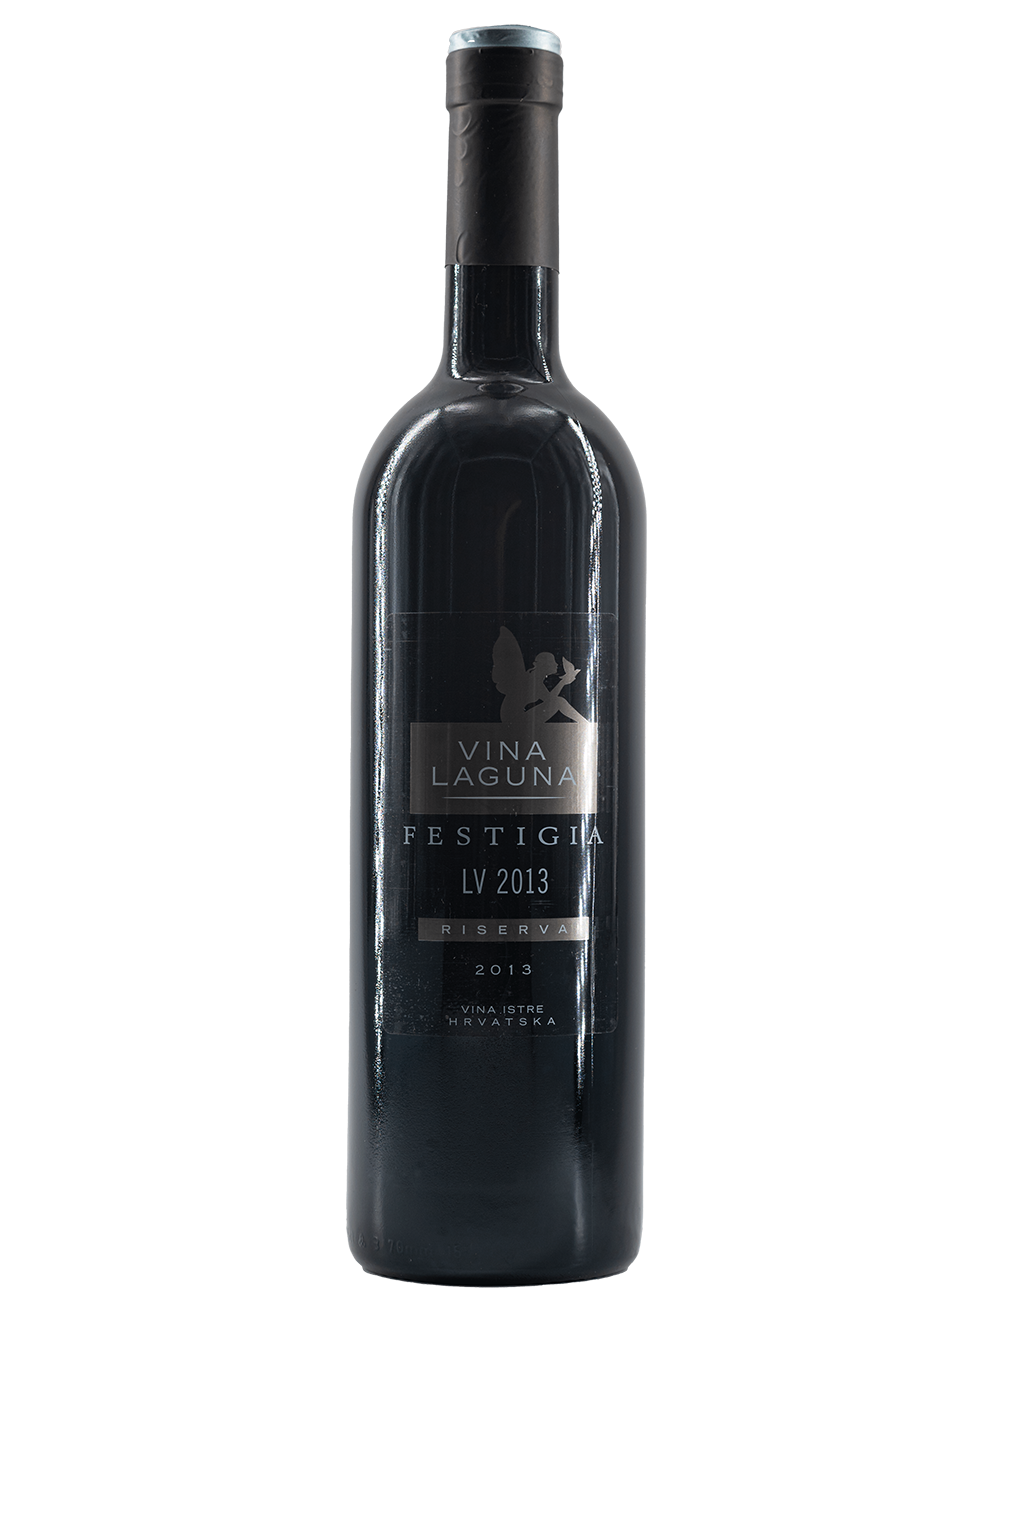 Vino Riserva LV je suho crno vino iz kategorije vina Festigia Riserva